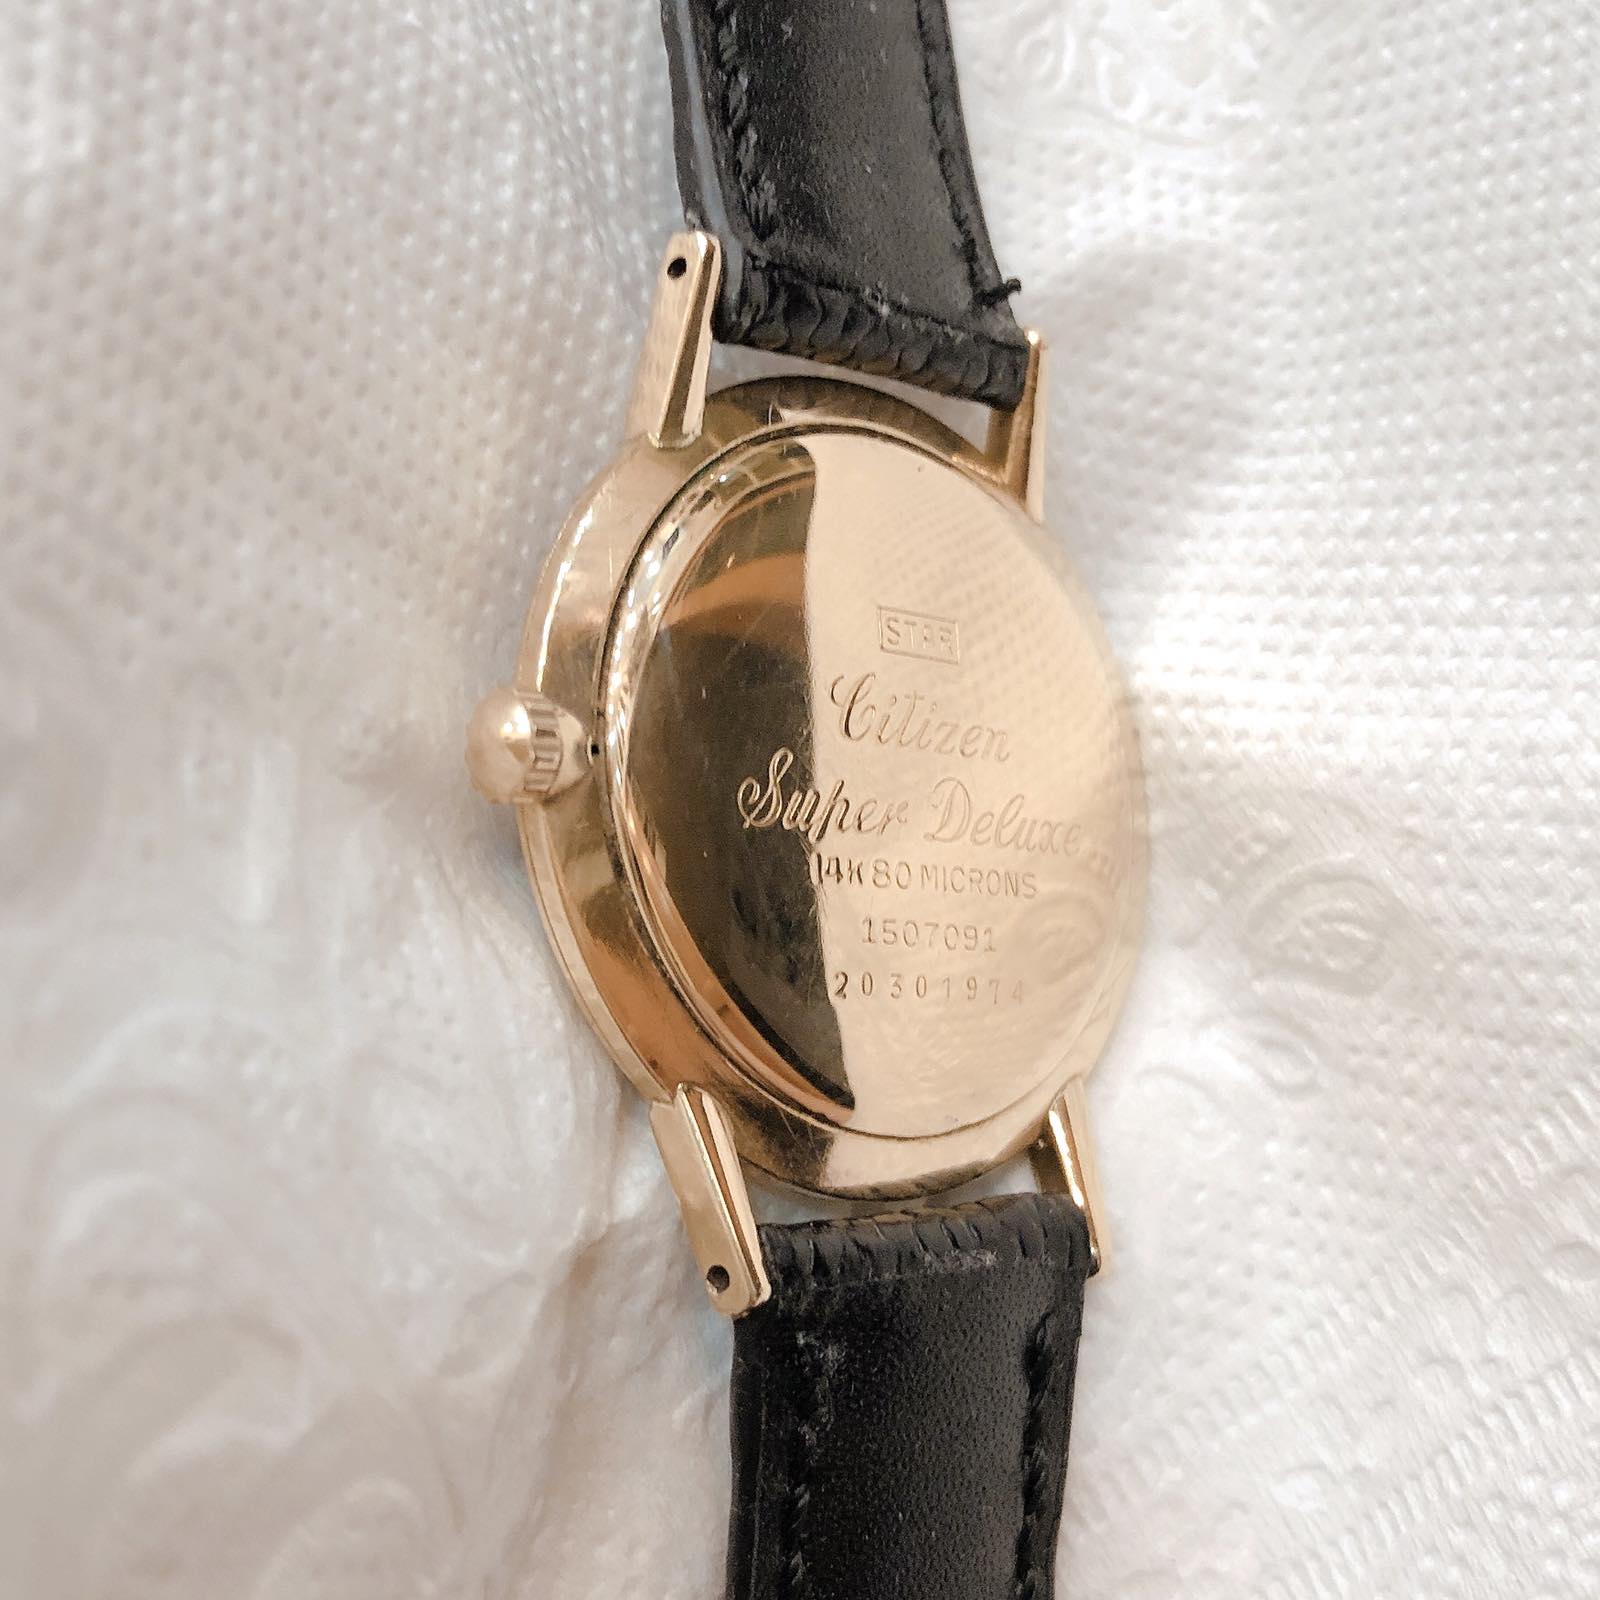 Đồng hồ cổ Citizen Super Deluxe lên dây lacke vàng 80 micro chính hãng nhật bản